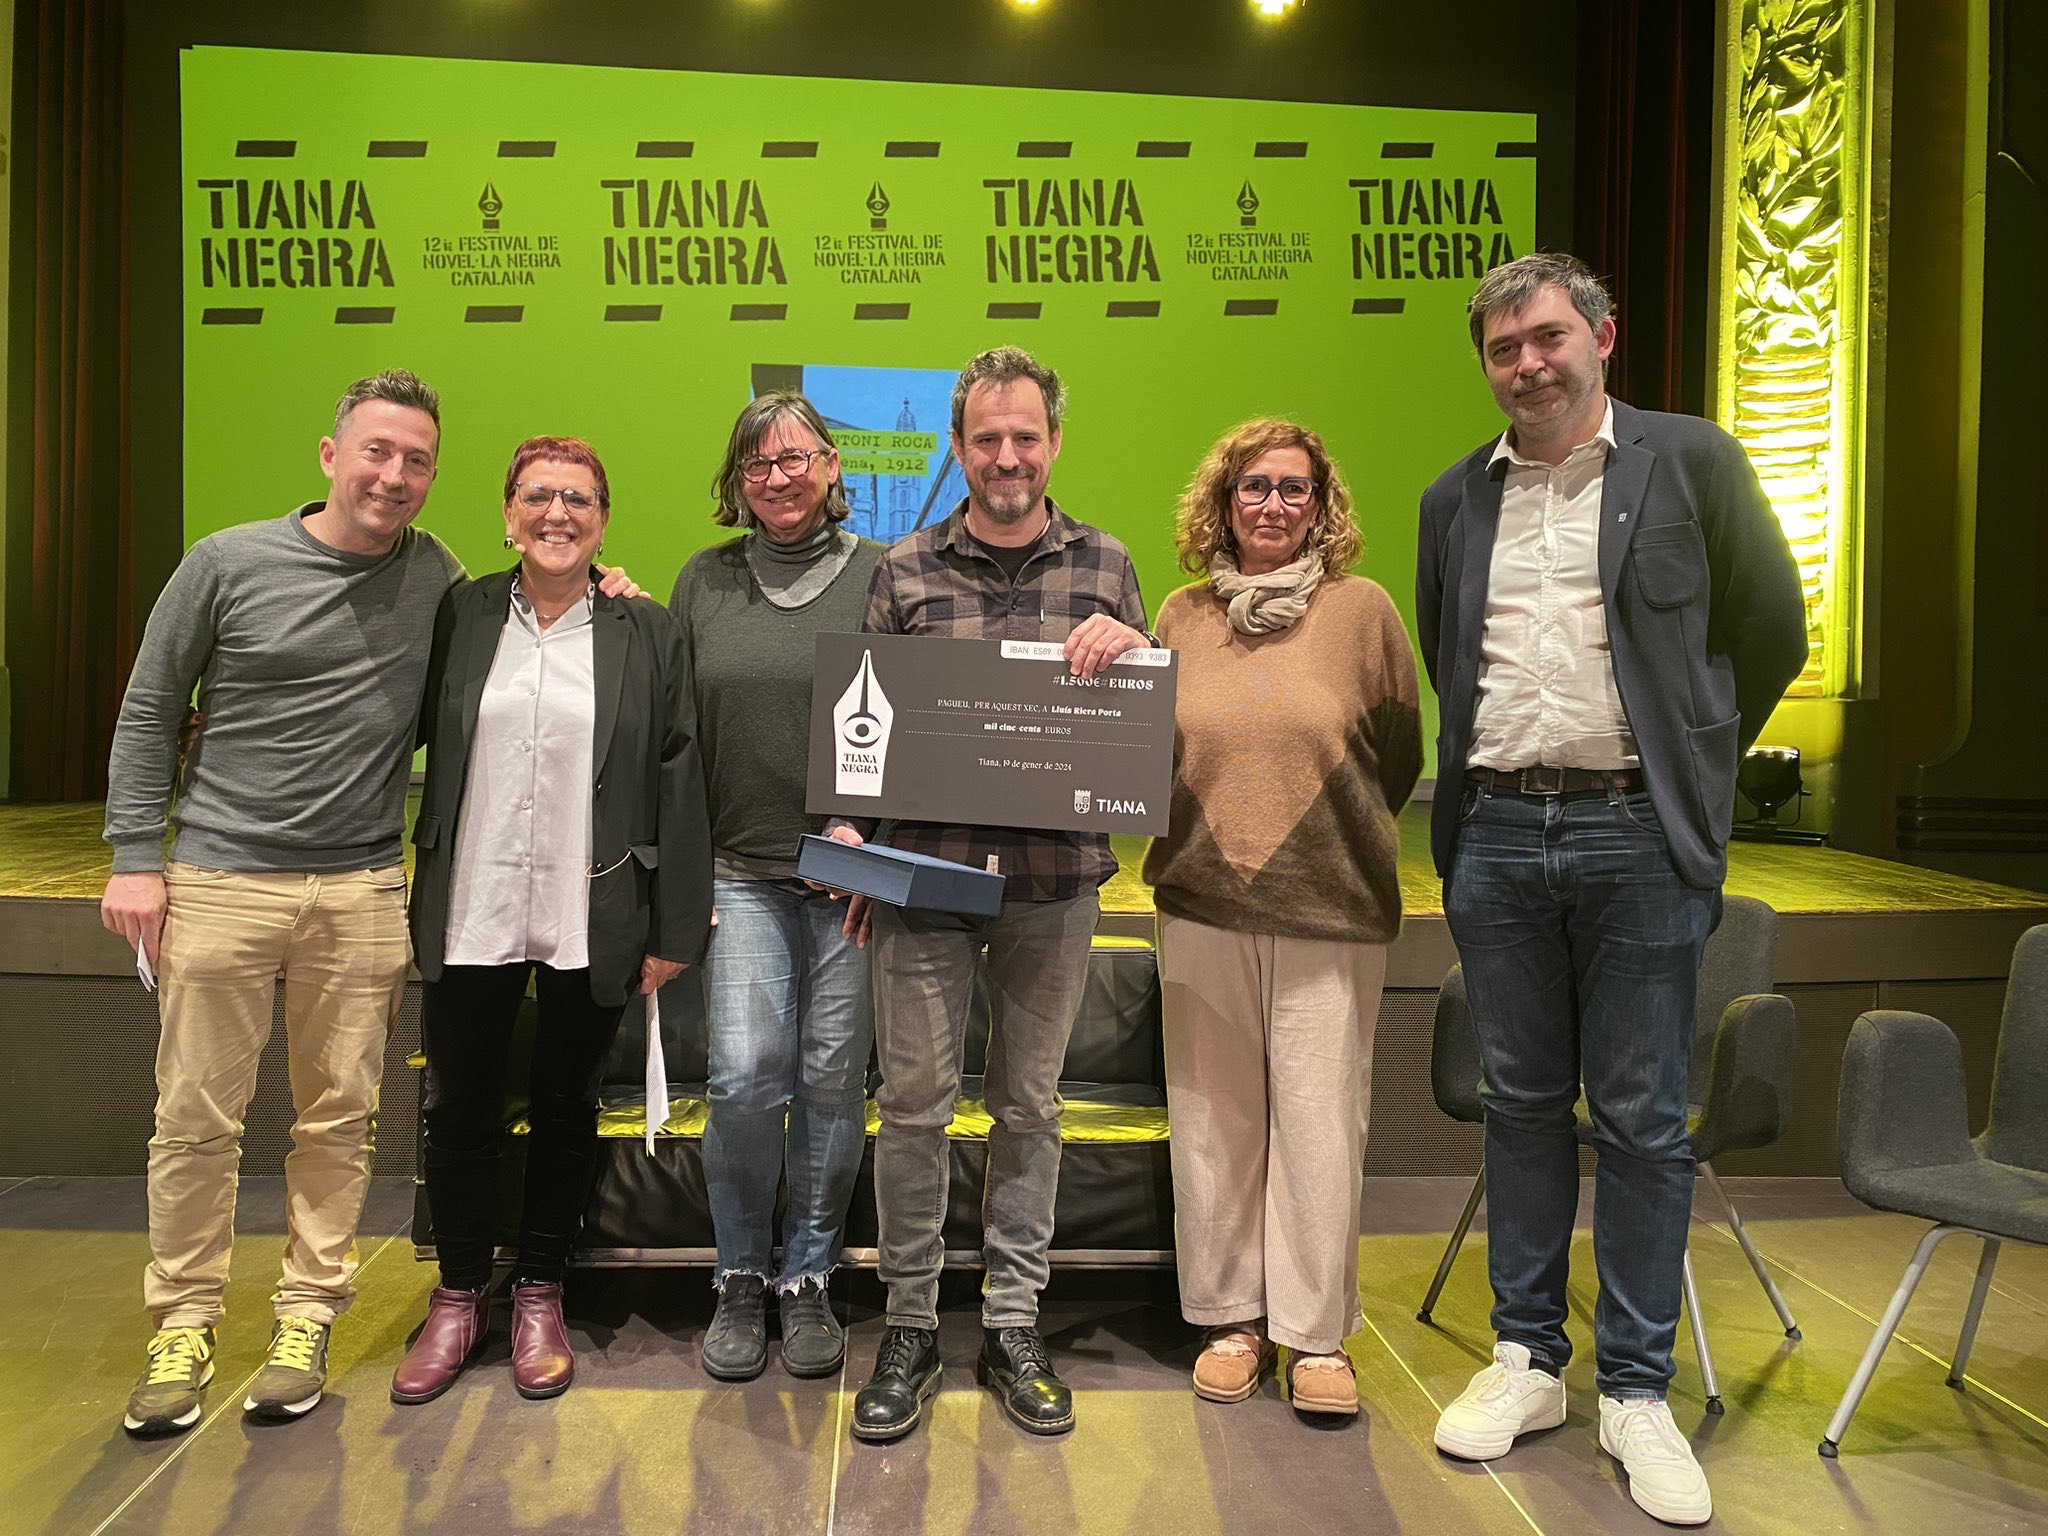 Lluís Riera wins the 11th Agustí Vehí Memorial Award – Vila de Tiana